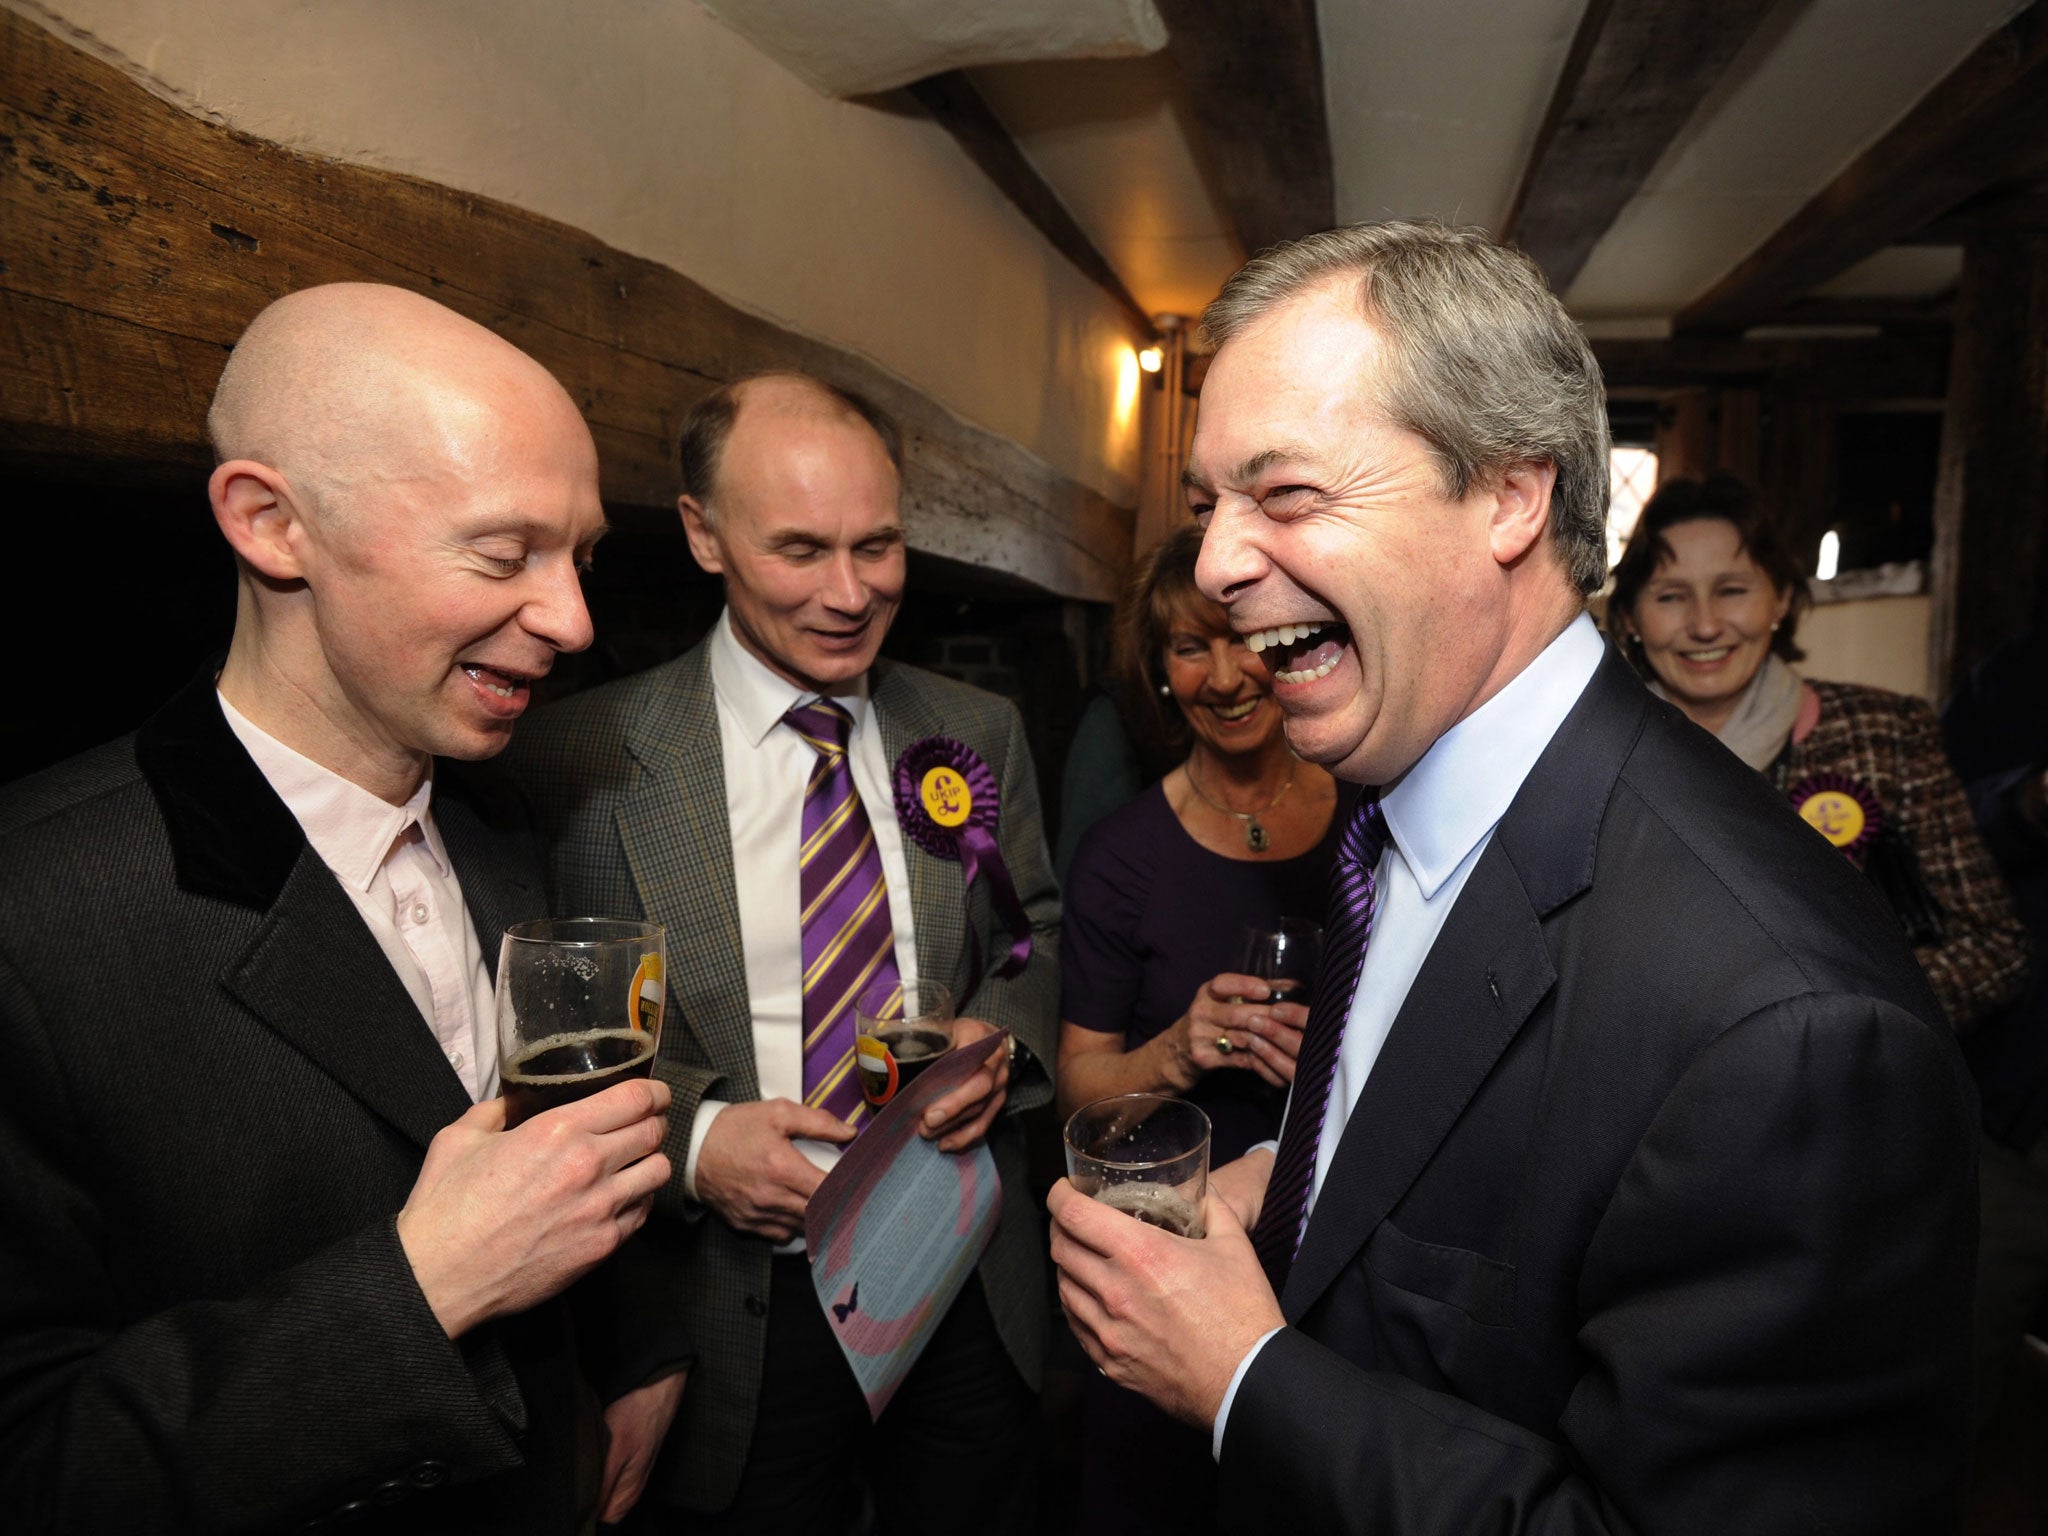 Ukip leader Nigel Farage at the Kings Arms pub in Amersham in Buckinghamshire